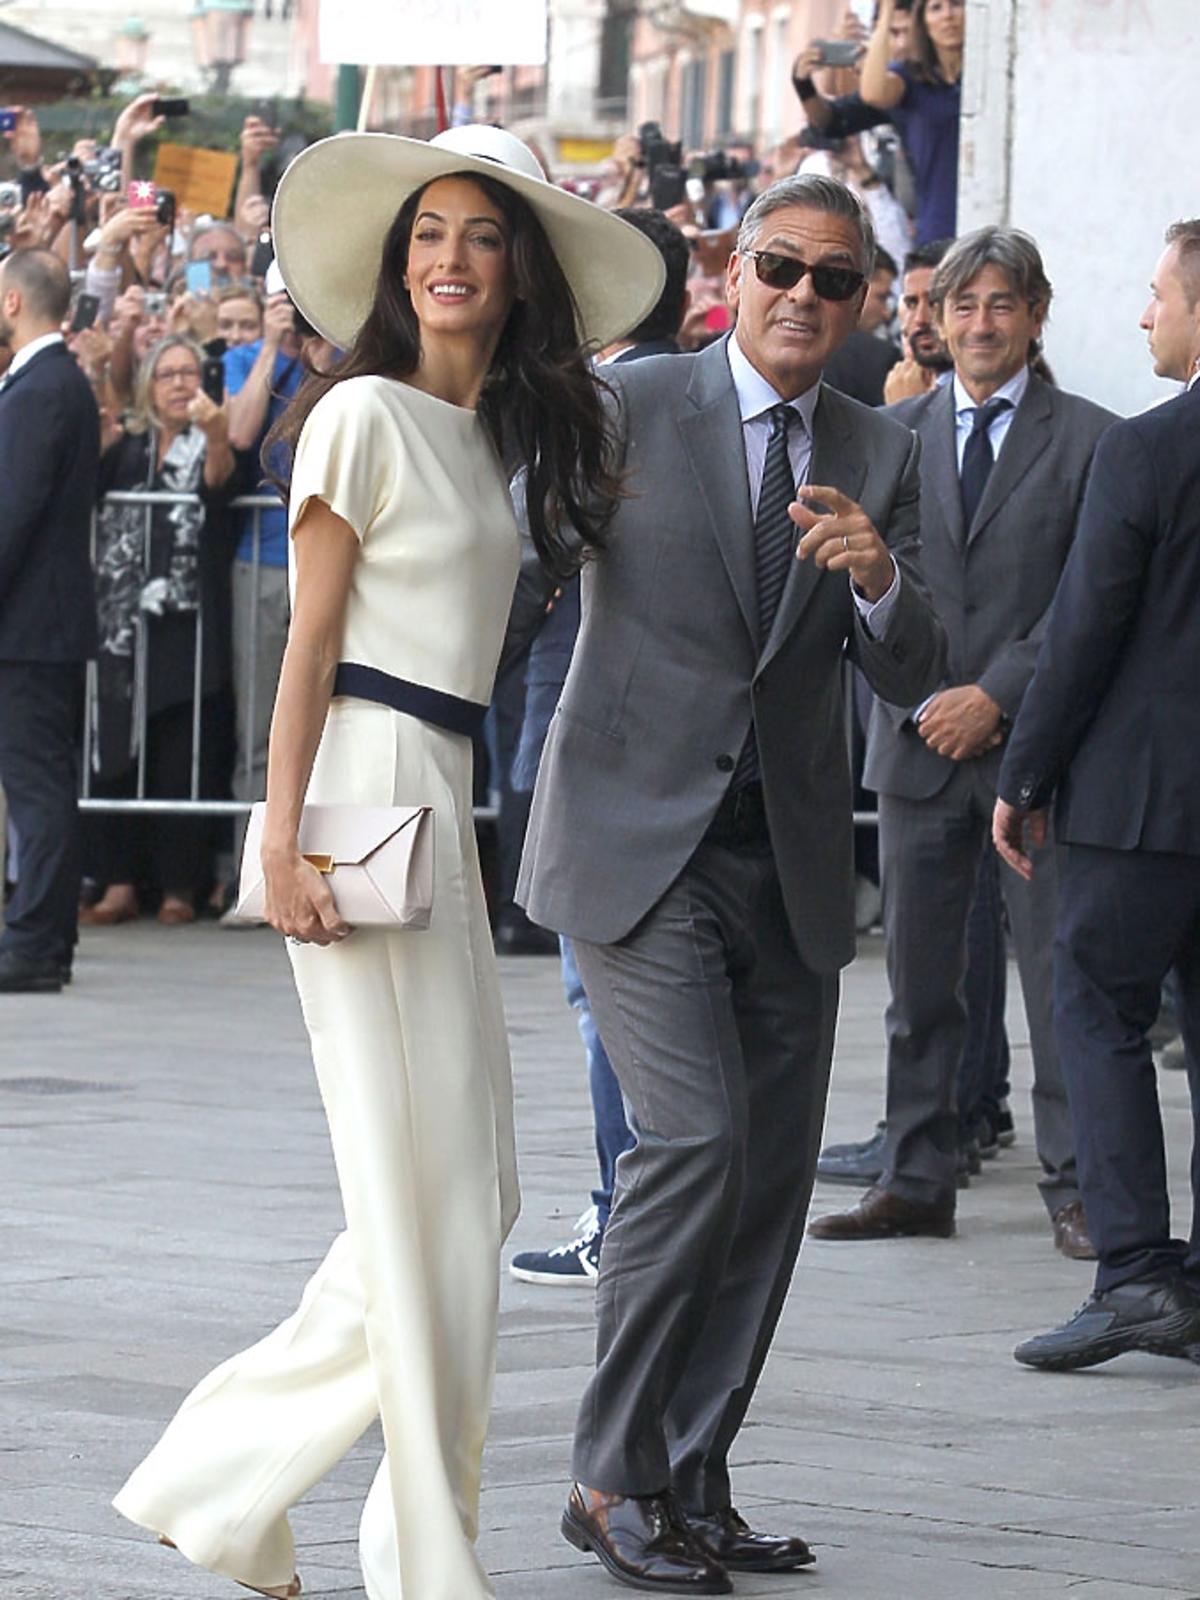 Amal Clooney ubrana na biało, w kapeluszu, z kopertówką, George Clooney w eleganckim grafitowym garniturze